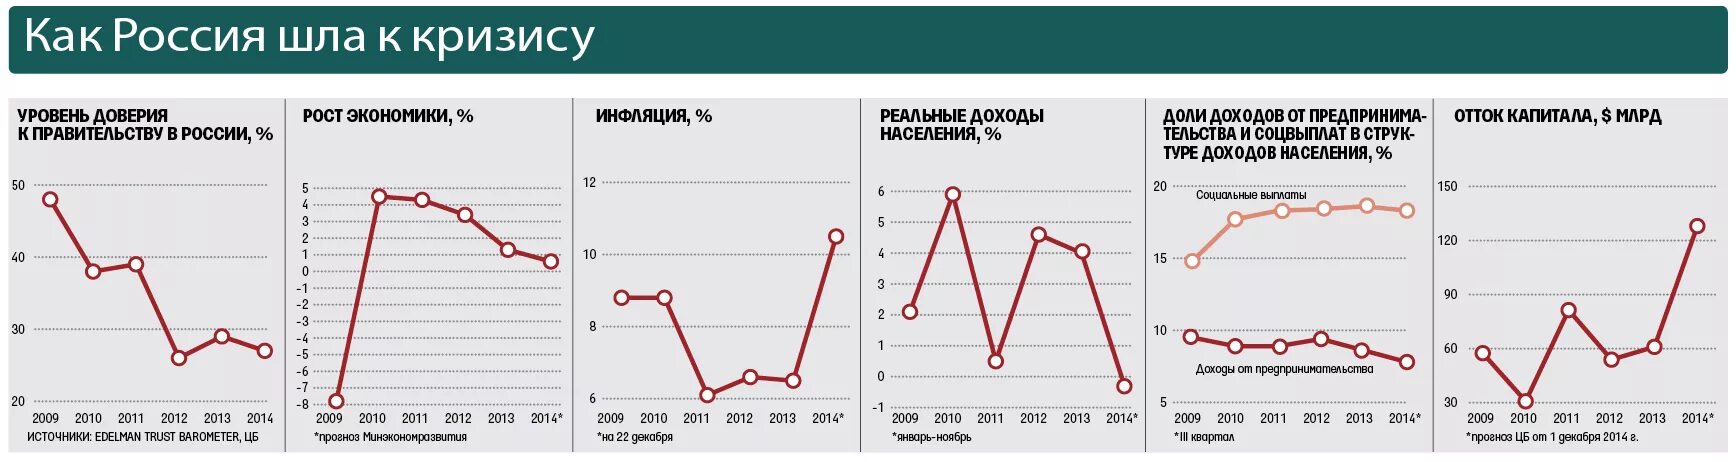 Таблица экономические кризисы в России по годам. Экономические кризисы в России график. Экономические кризисы в России по годам. Кризис в России диаграмма. Экономическая обстановка в рф